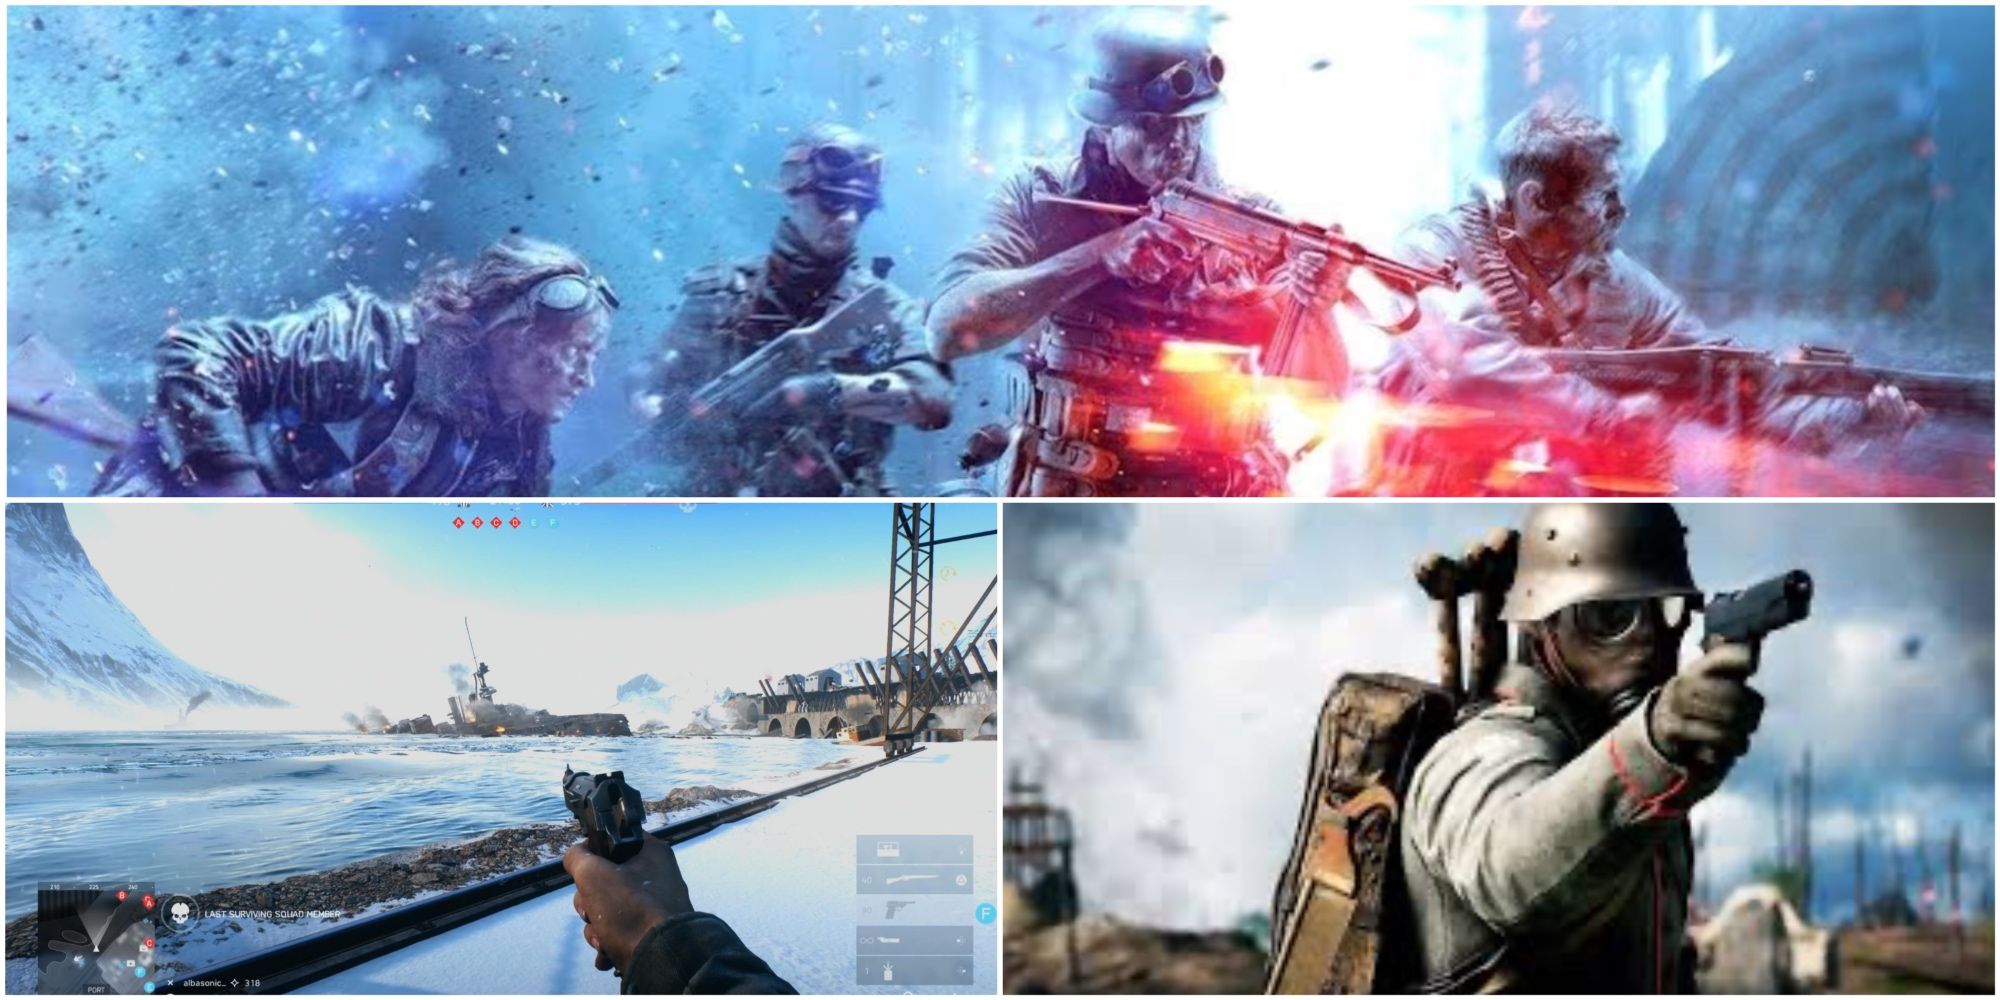 Split image showing Pistols in Battlefield 5.